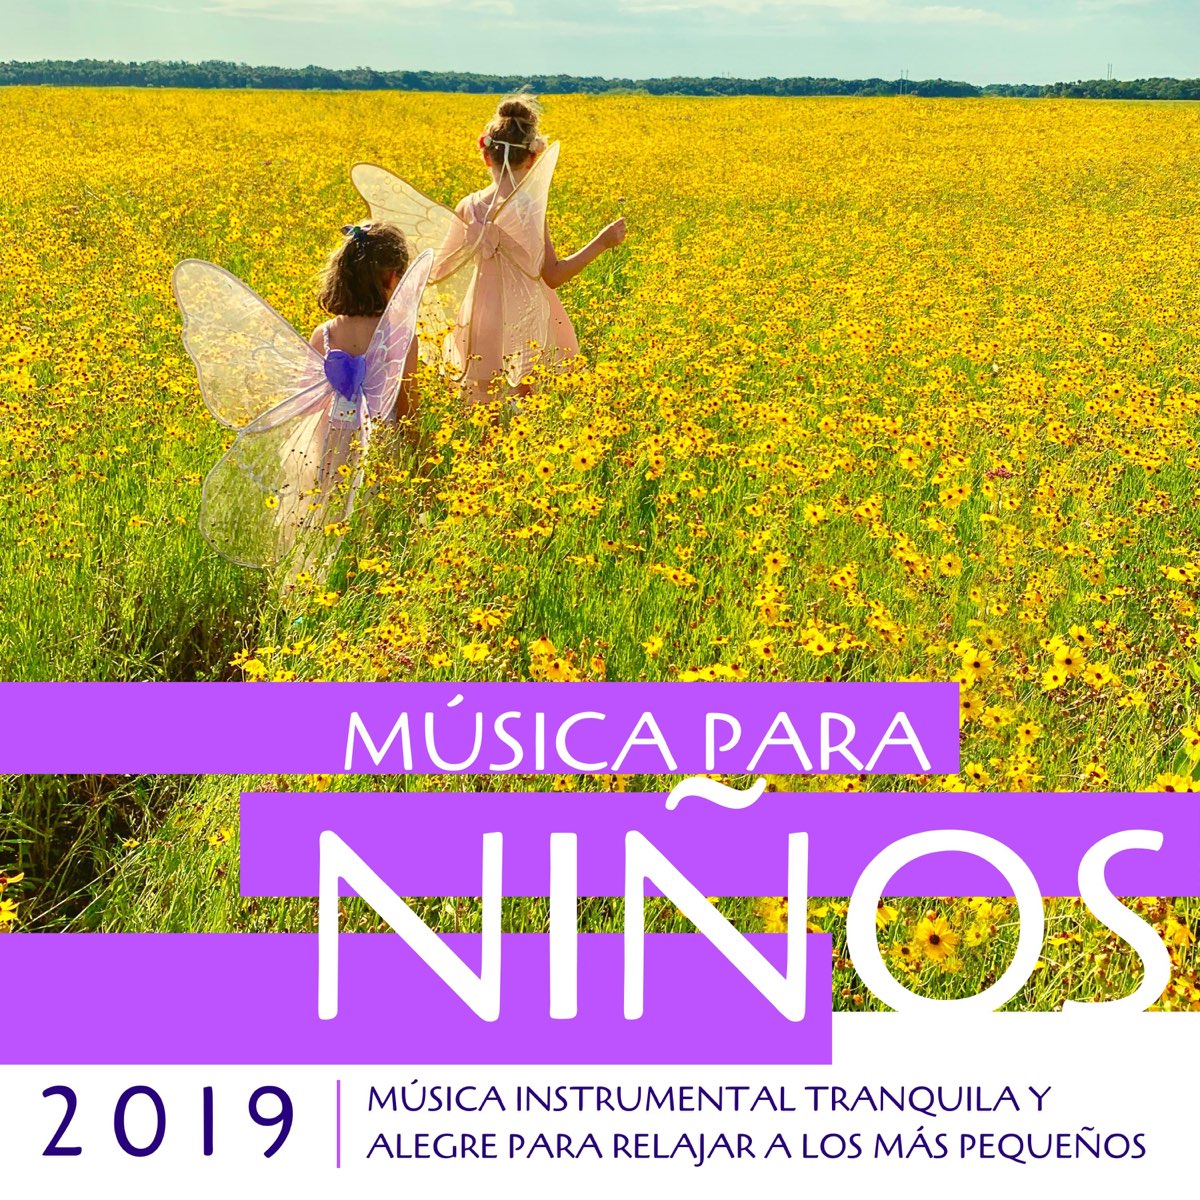 Música para Niños 2019 - Música Instrumental Tranquila y Alegre para a los Más Pequeños by Juan Positivo y Alegre on Apple Music